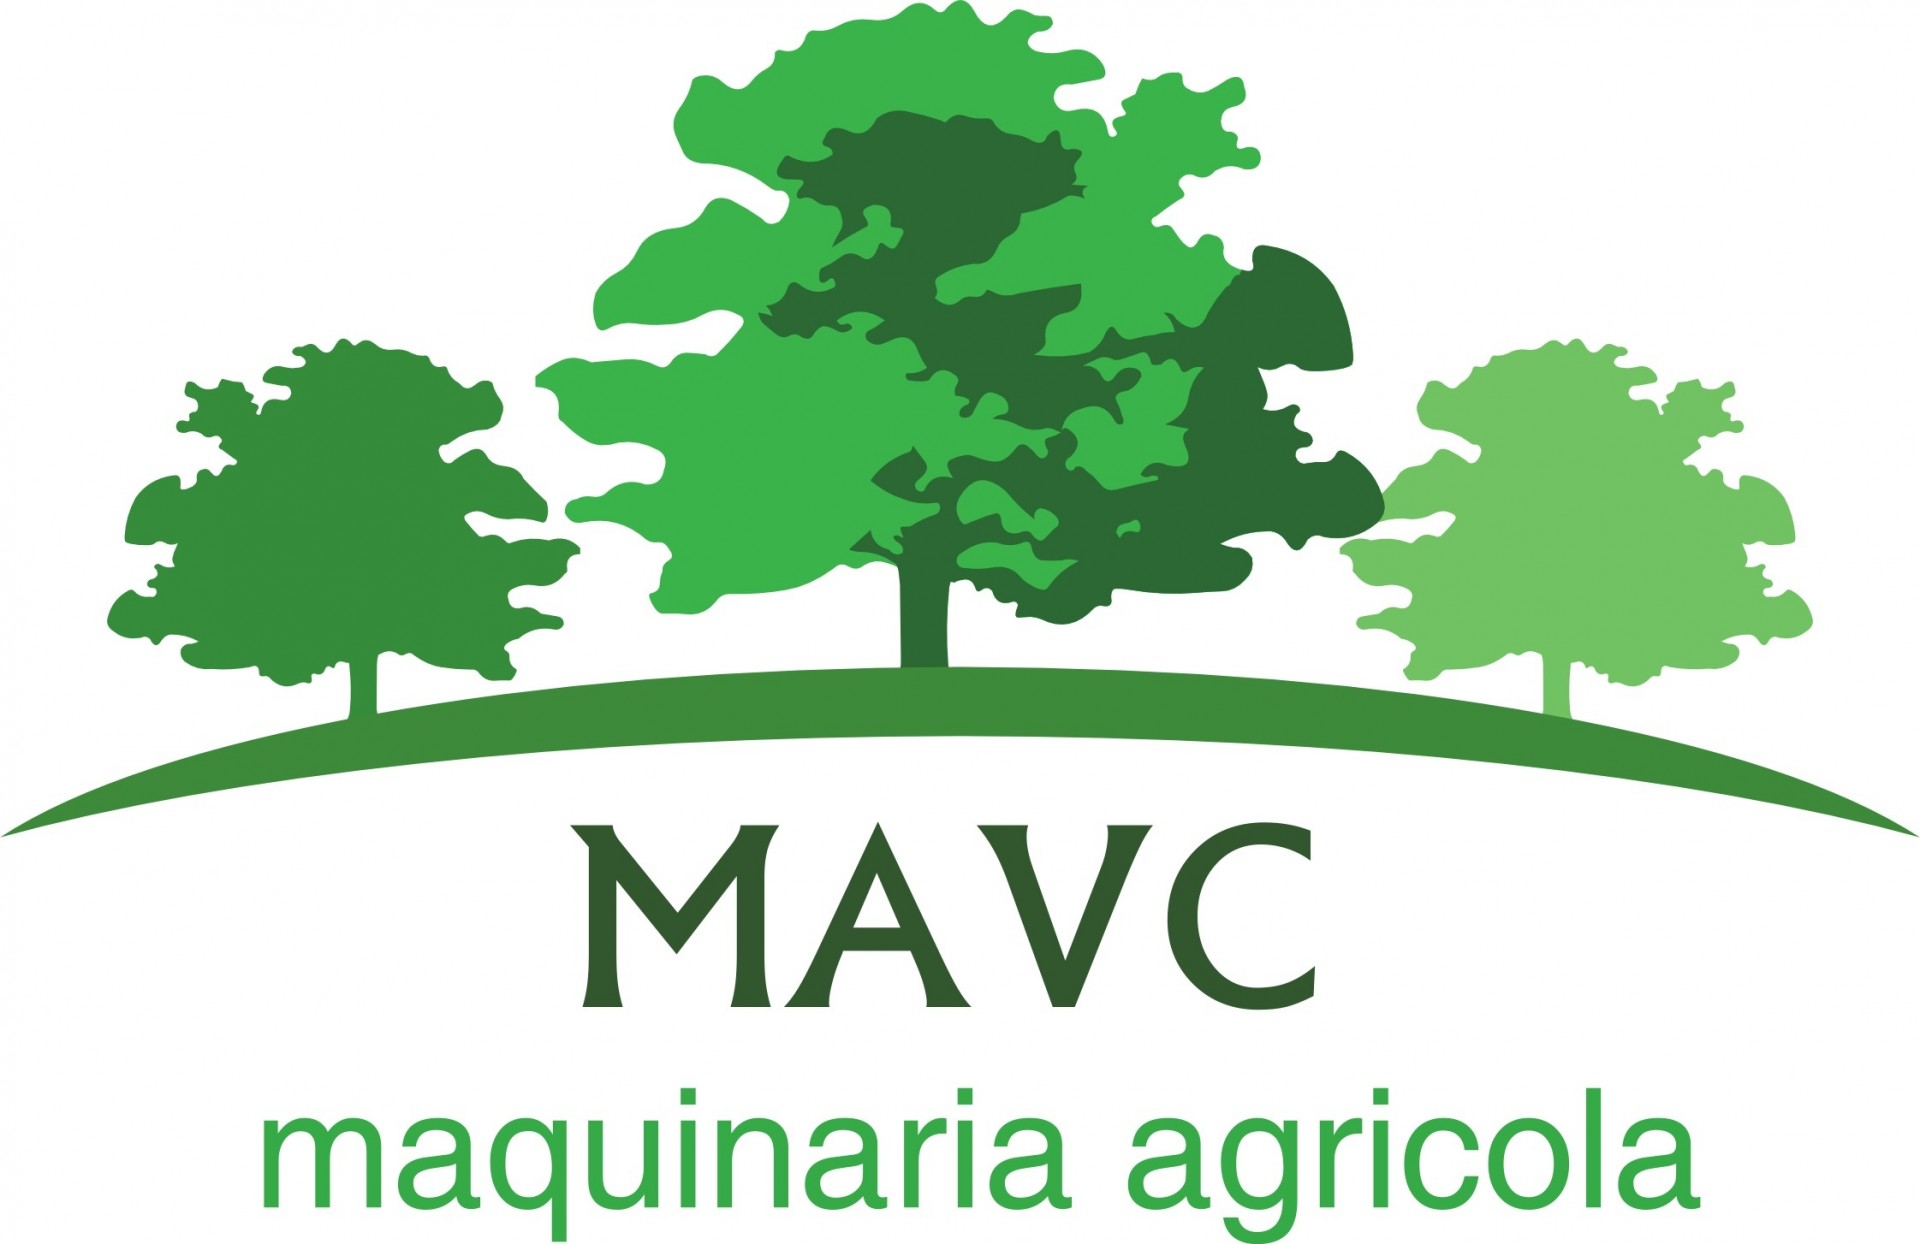 MAVC - MAQUINARIA AGRICOLA